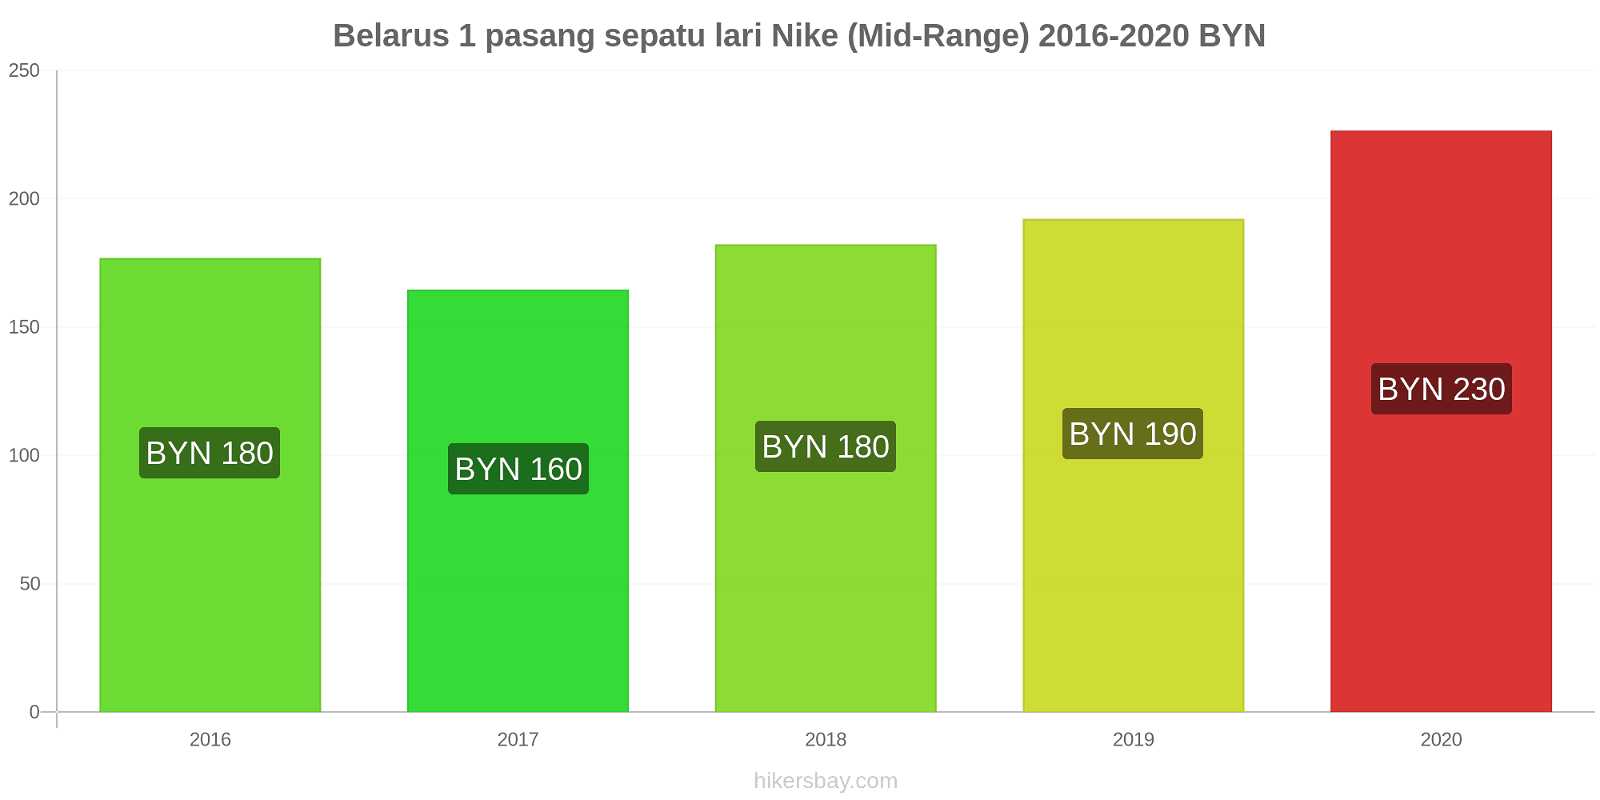 Belarus perubahan harga 1 pasang sepatu lari Nike (Mid-Range) hikersbay.com